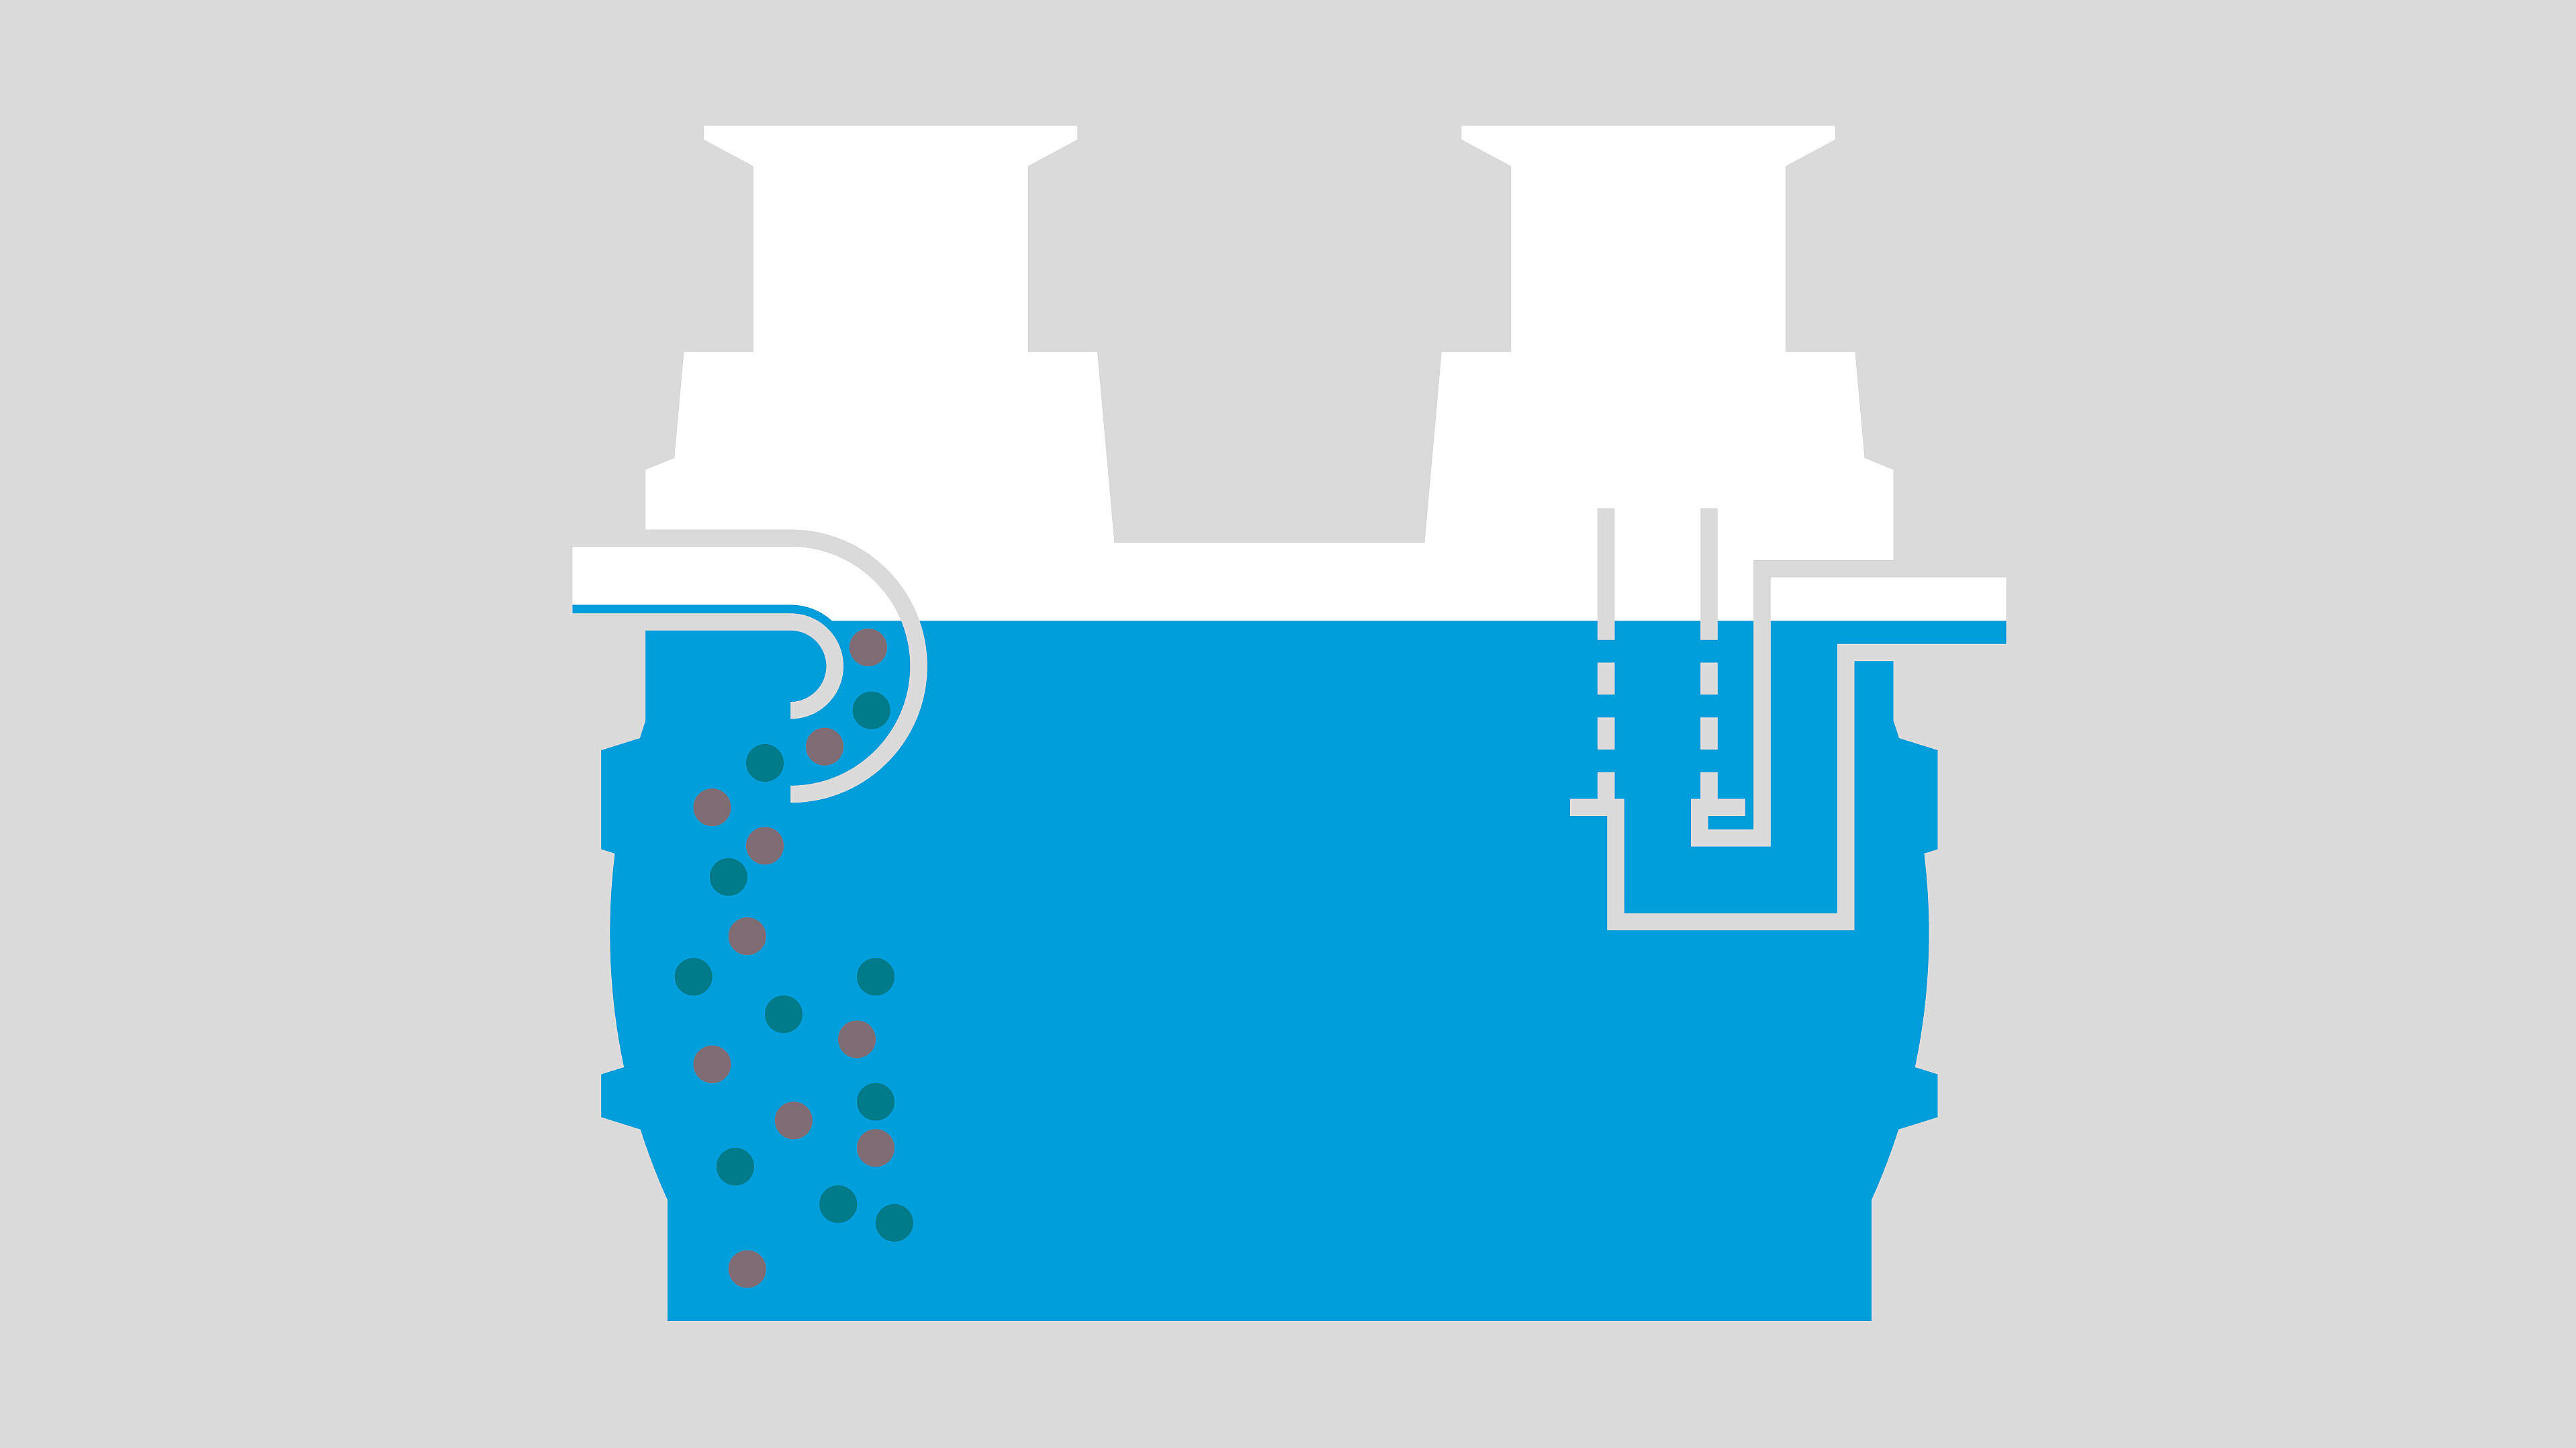 Mode de fonctionnement du séparateur à hydrocarbures - Phase 1 : déversement d’eaux usées